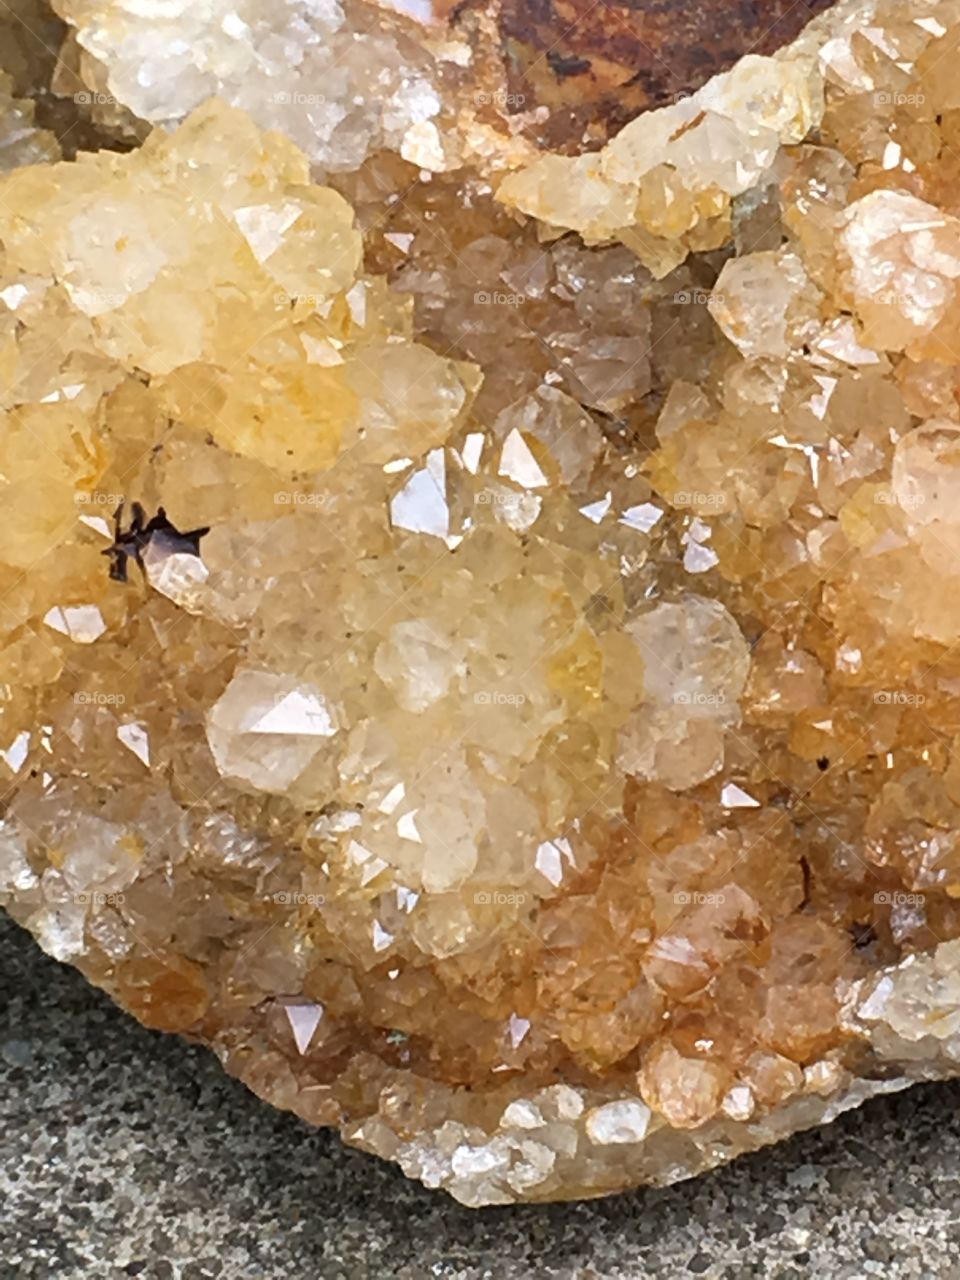 Rock crystals